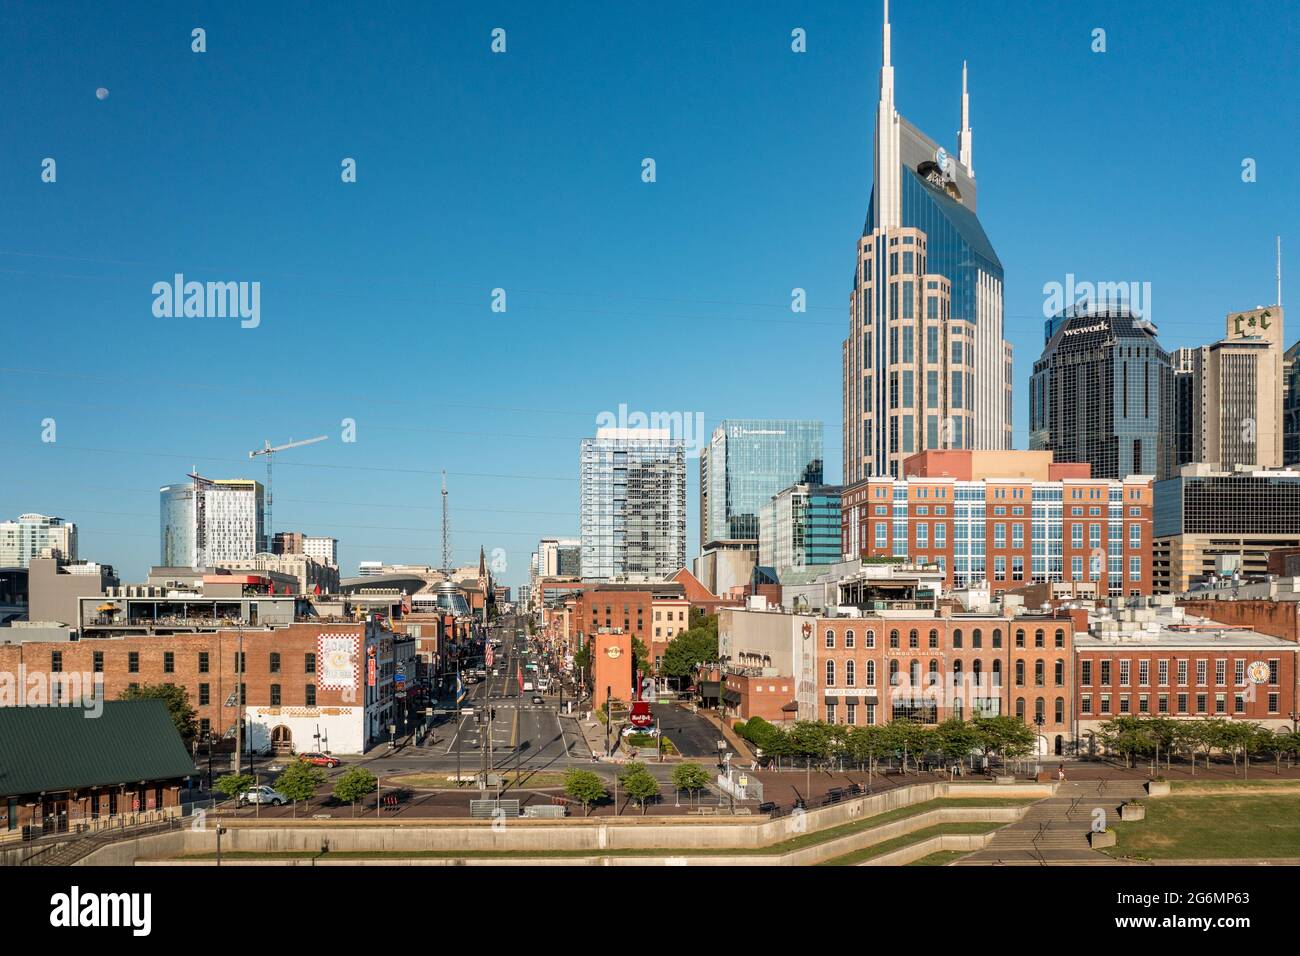 Nashville, Tennessee - 28 juin 2021 : vue aérienne par drone du quartier financier du centre-ville de Nashville, avec un accent sur Broadway Banque D'Images